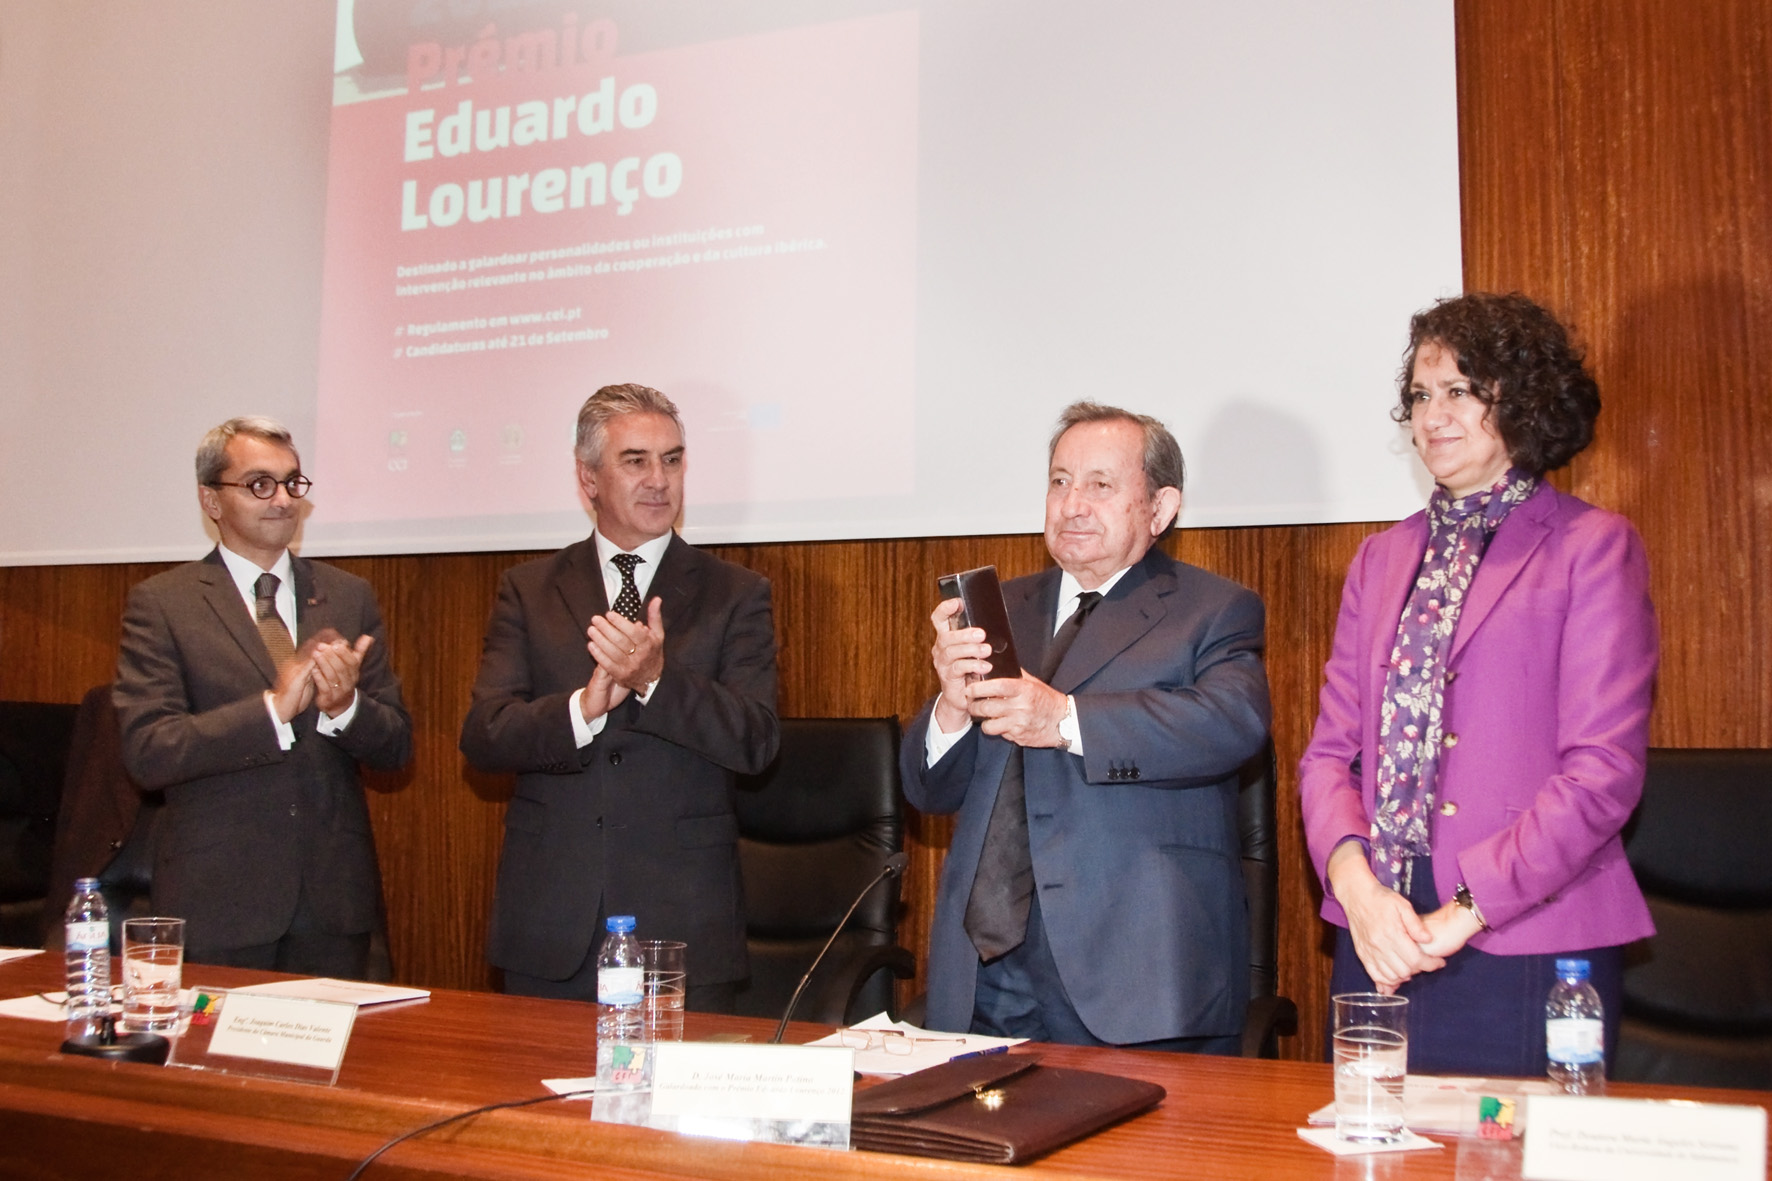 El sacerdote José María Martín Patino recibe el Premio Eduardo Lourenço, instituido por el Centro de Estudios Ibéricos